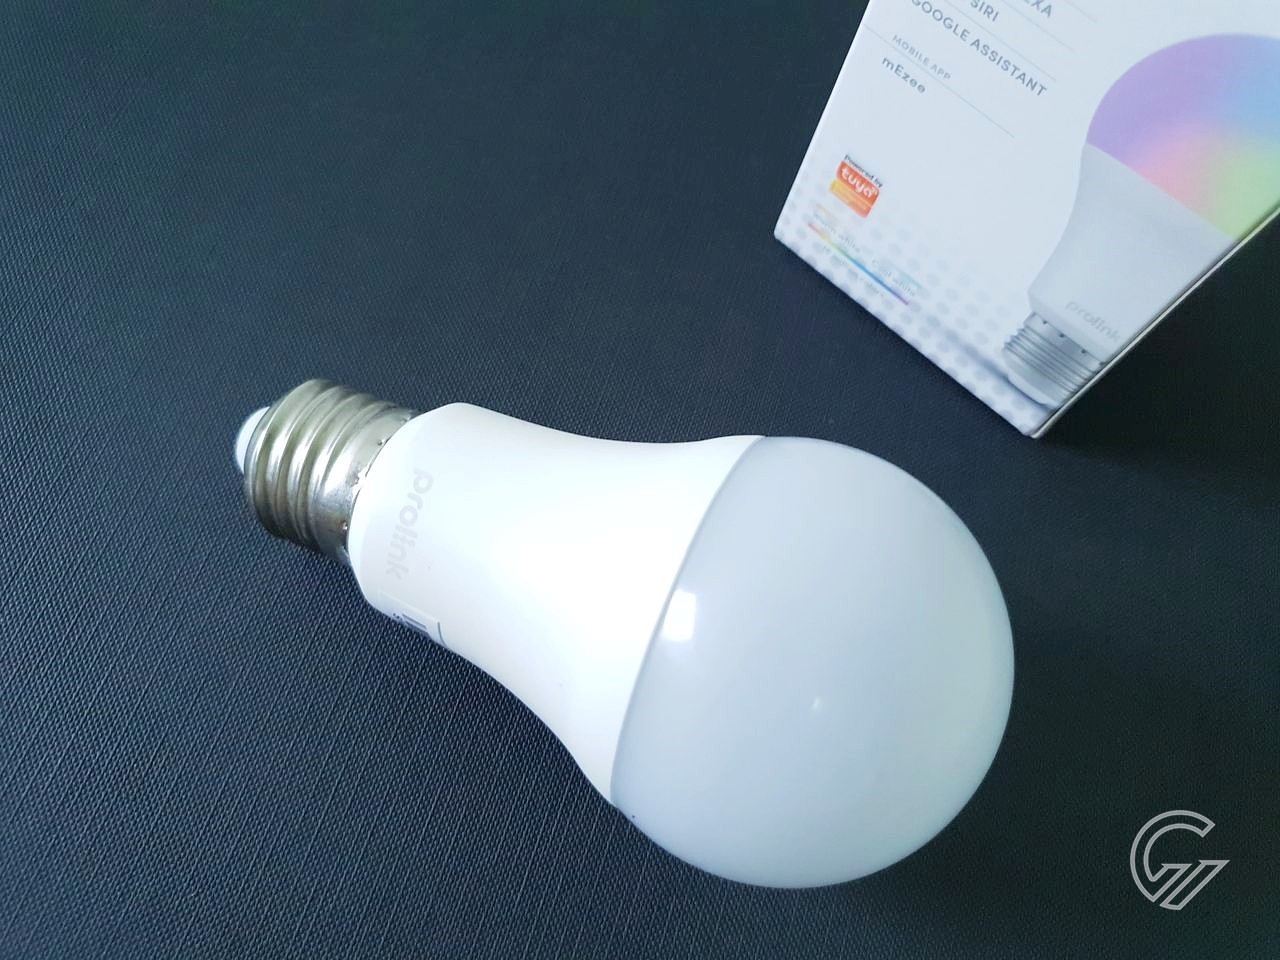 Review prolink Smart bulb DS-3601